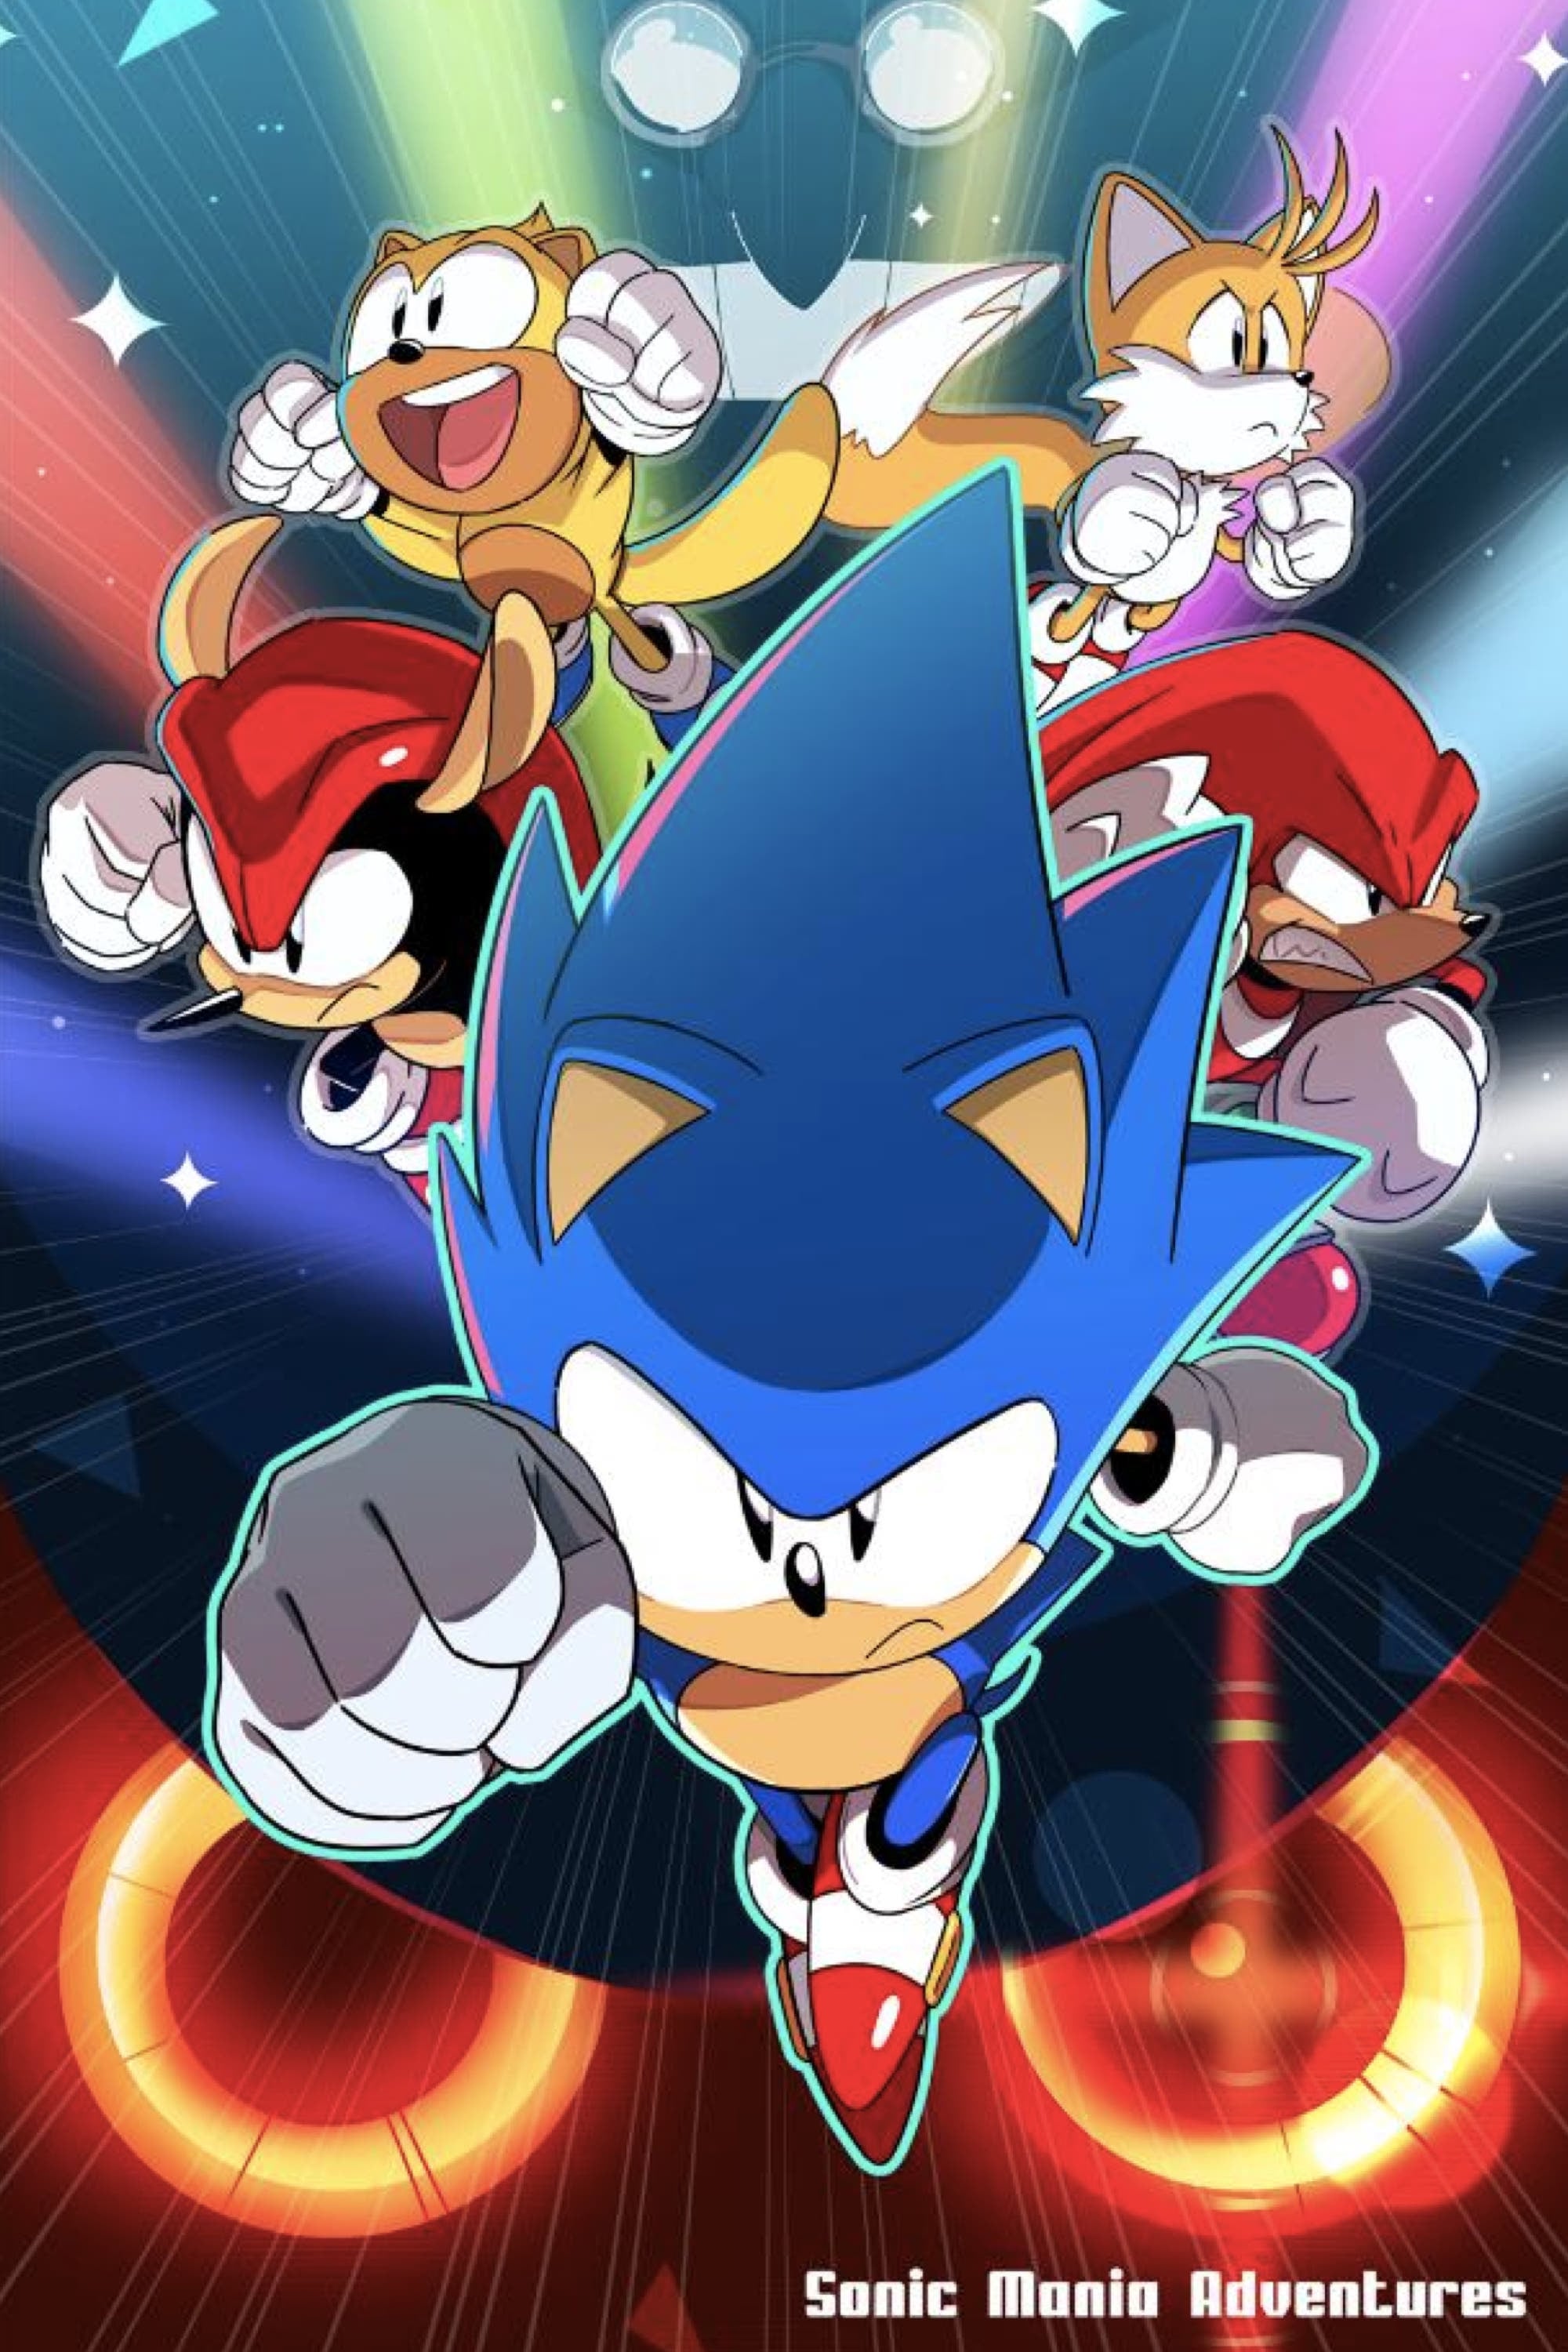 Classic Sonic est de retour dans sa dimension après les événements de Sonic Forces. Il découvre qu'Eggman collectionne les Chaos Emeralds et en possède déjà quatre. Sonic doit rassembler toutes les Chaos Emeralds avant Eggman.